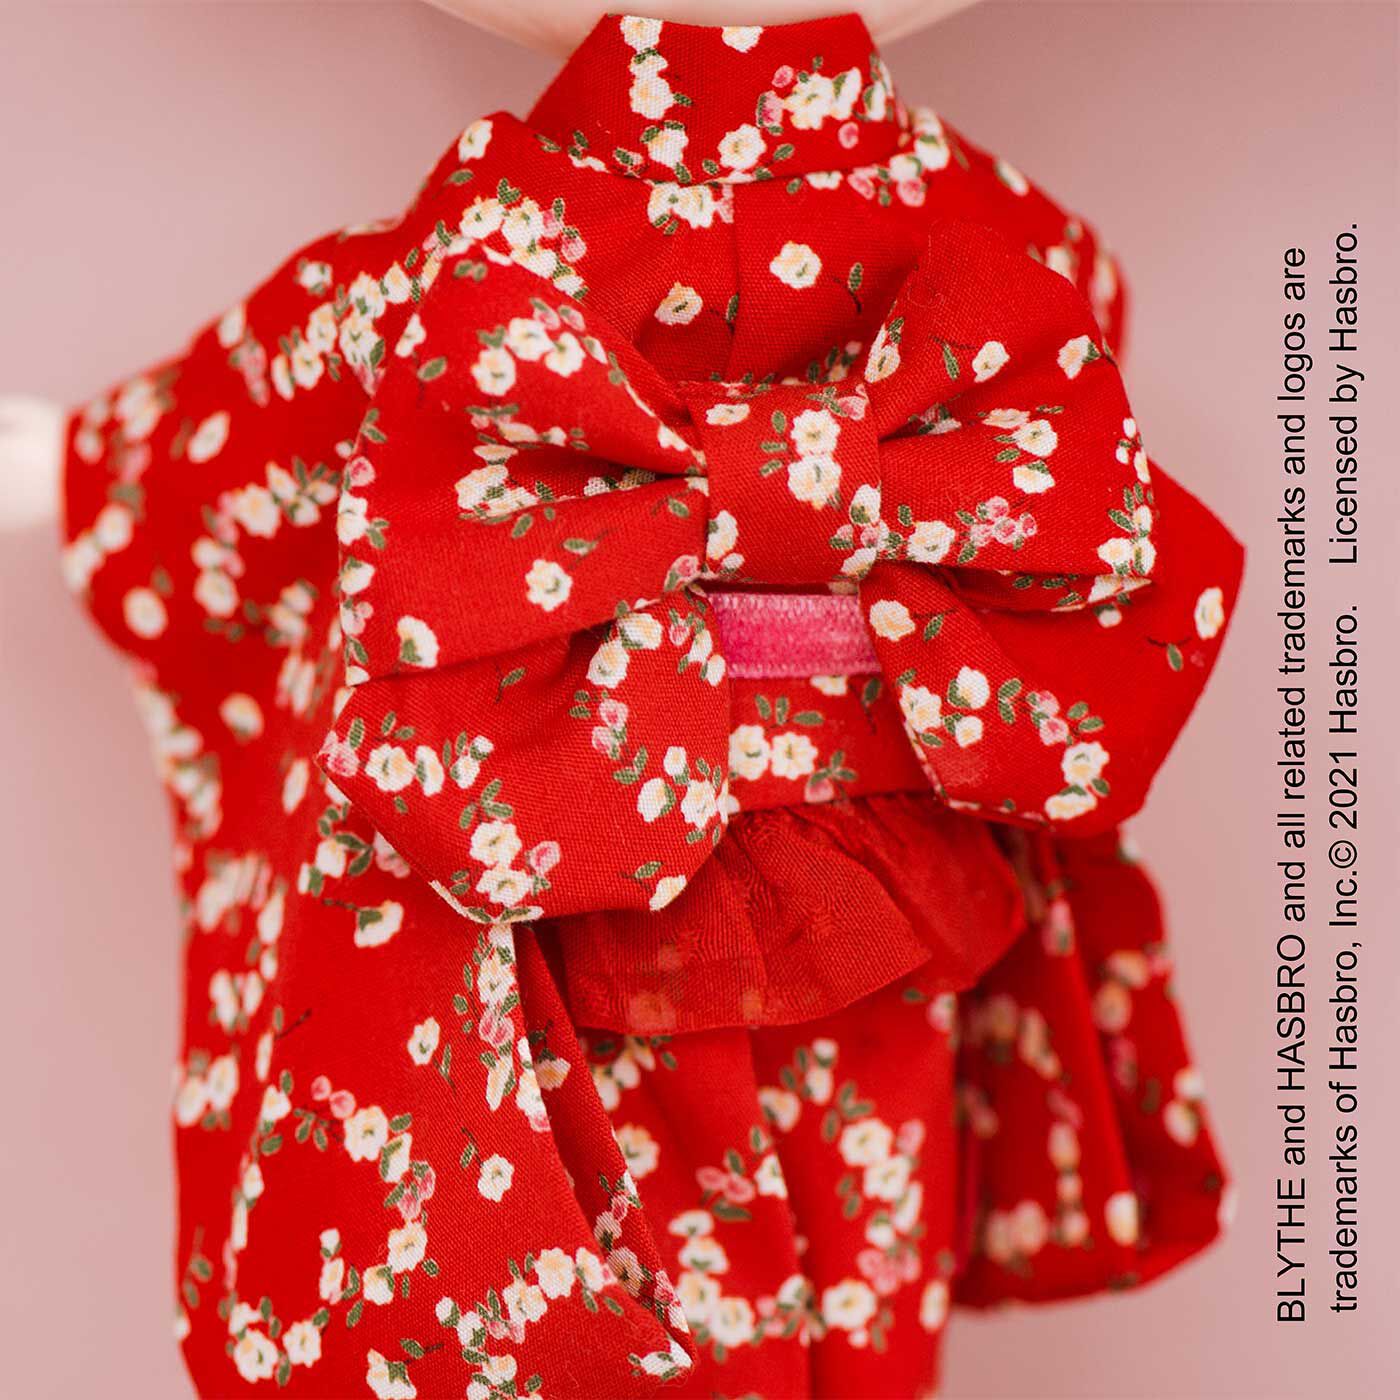 Couturier|真っ赤なフリルがロマンティック chimachocoさんのドール用着物のキット